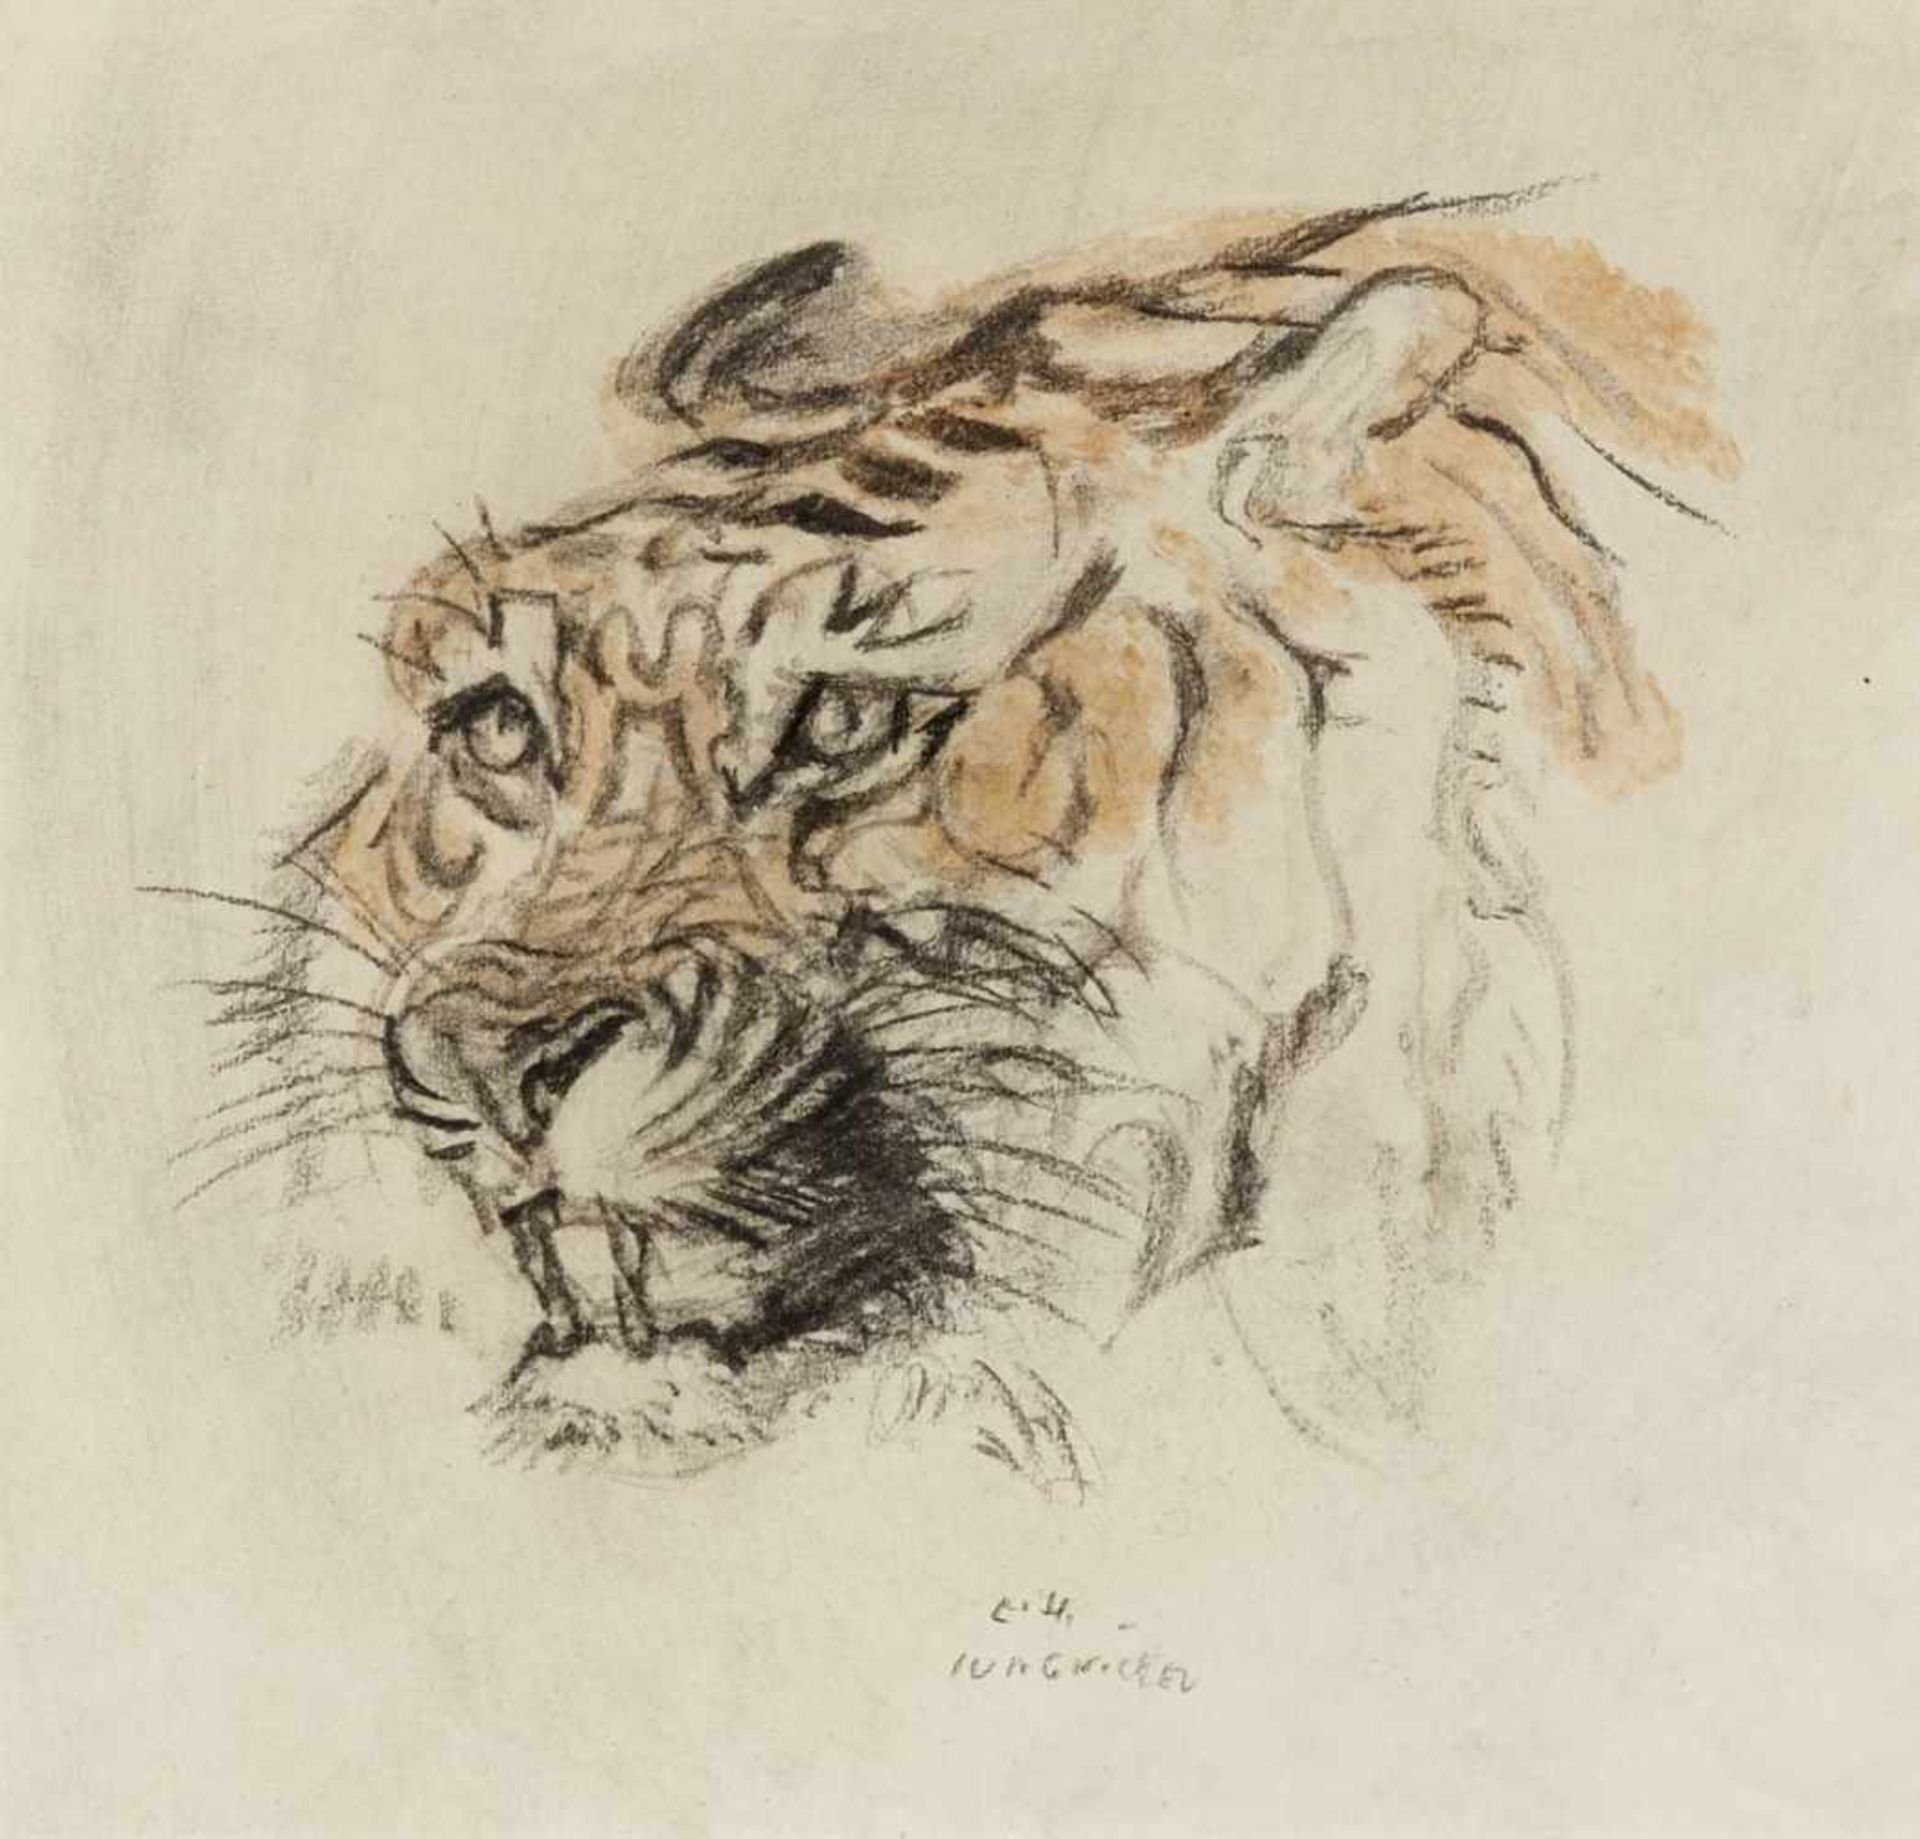 Kopf eines TigersKreide in Schwarz und Aquarelfarbe. Unten Mitte: L.H. Jungnickel. 29 x 31 cm.Head